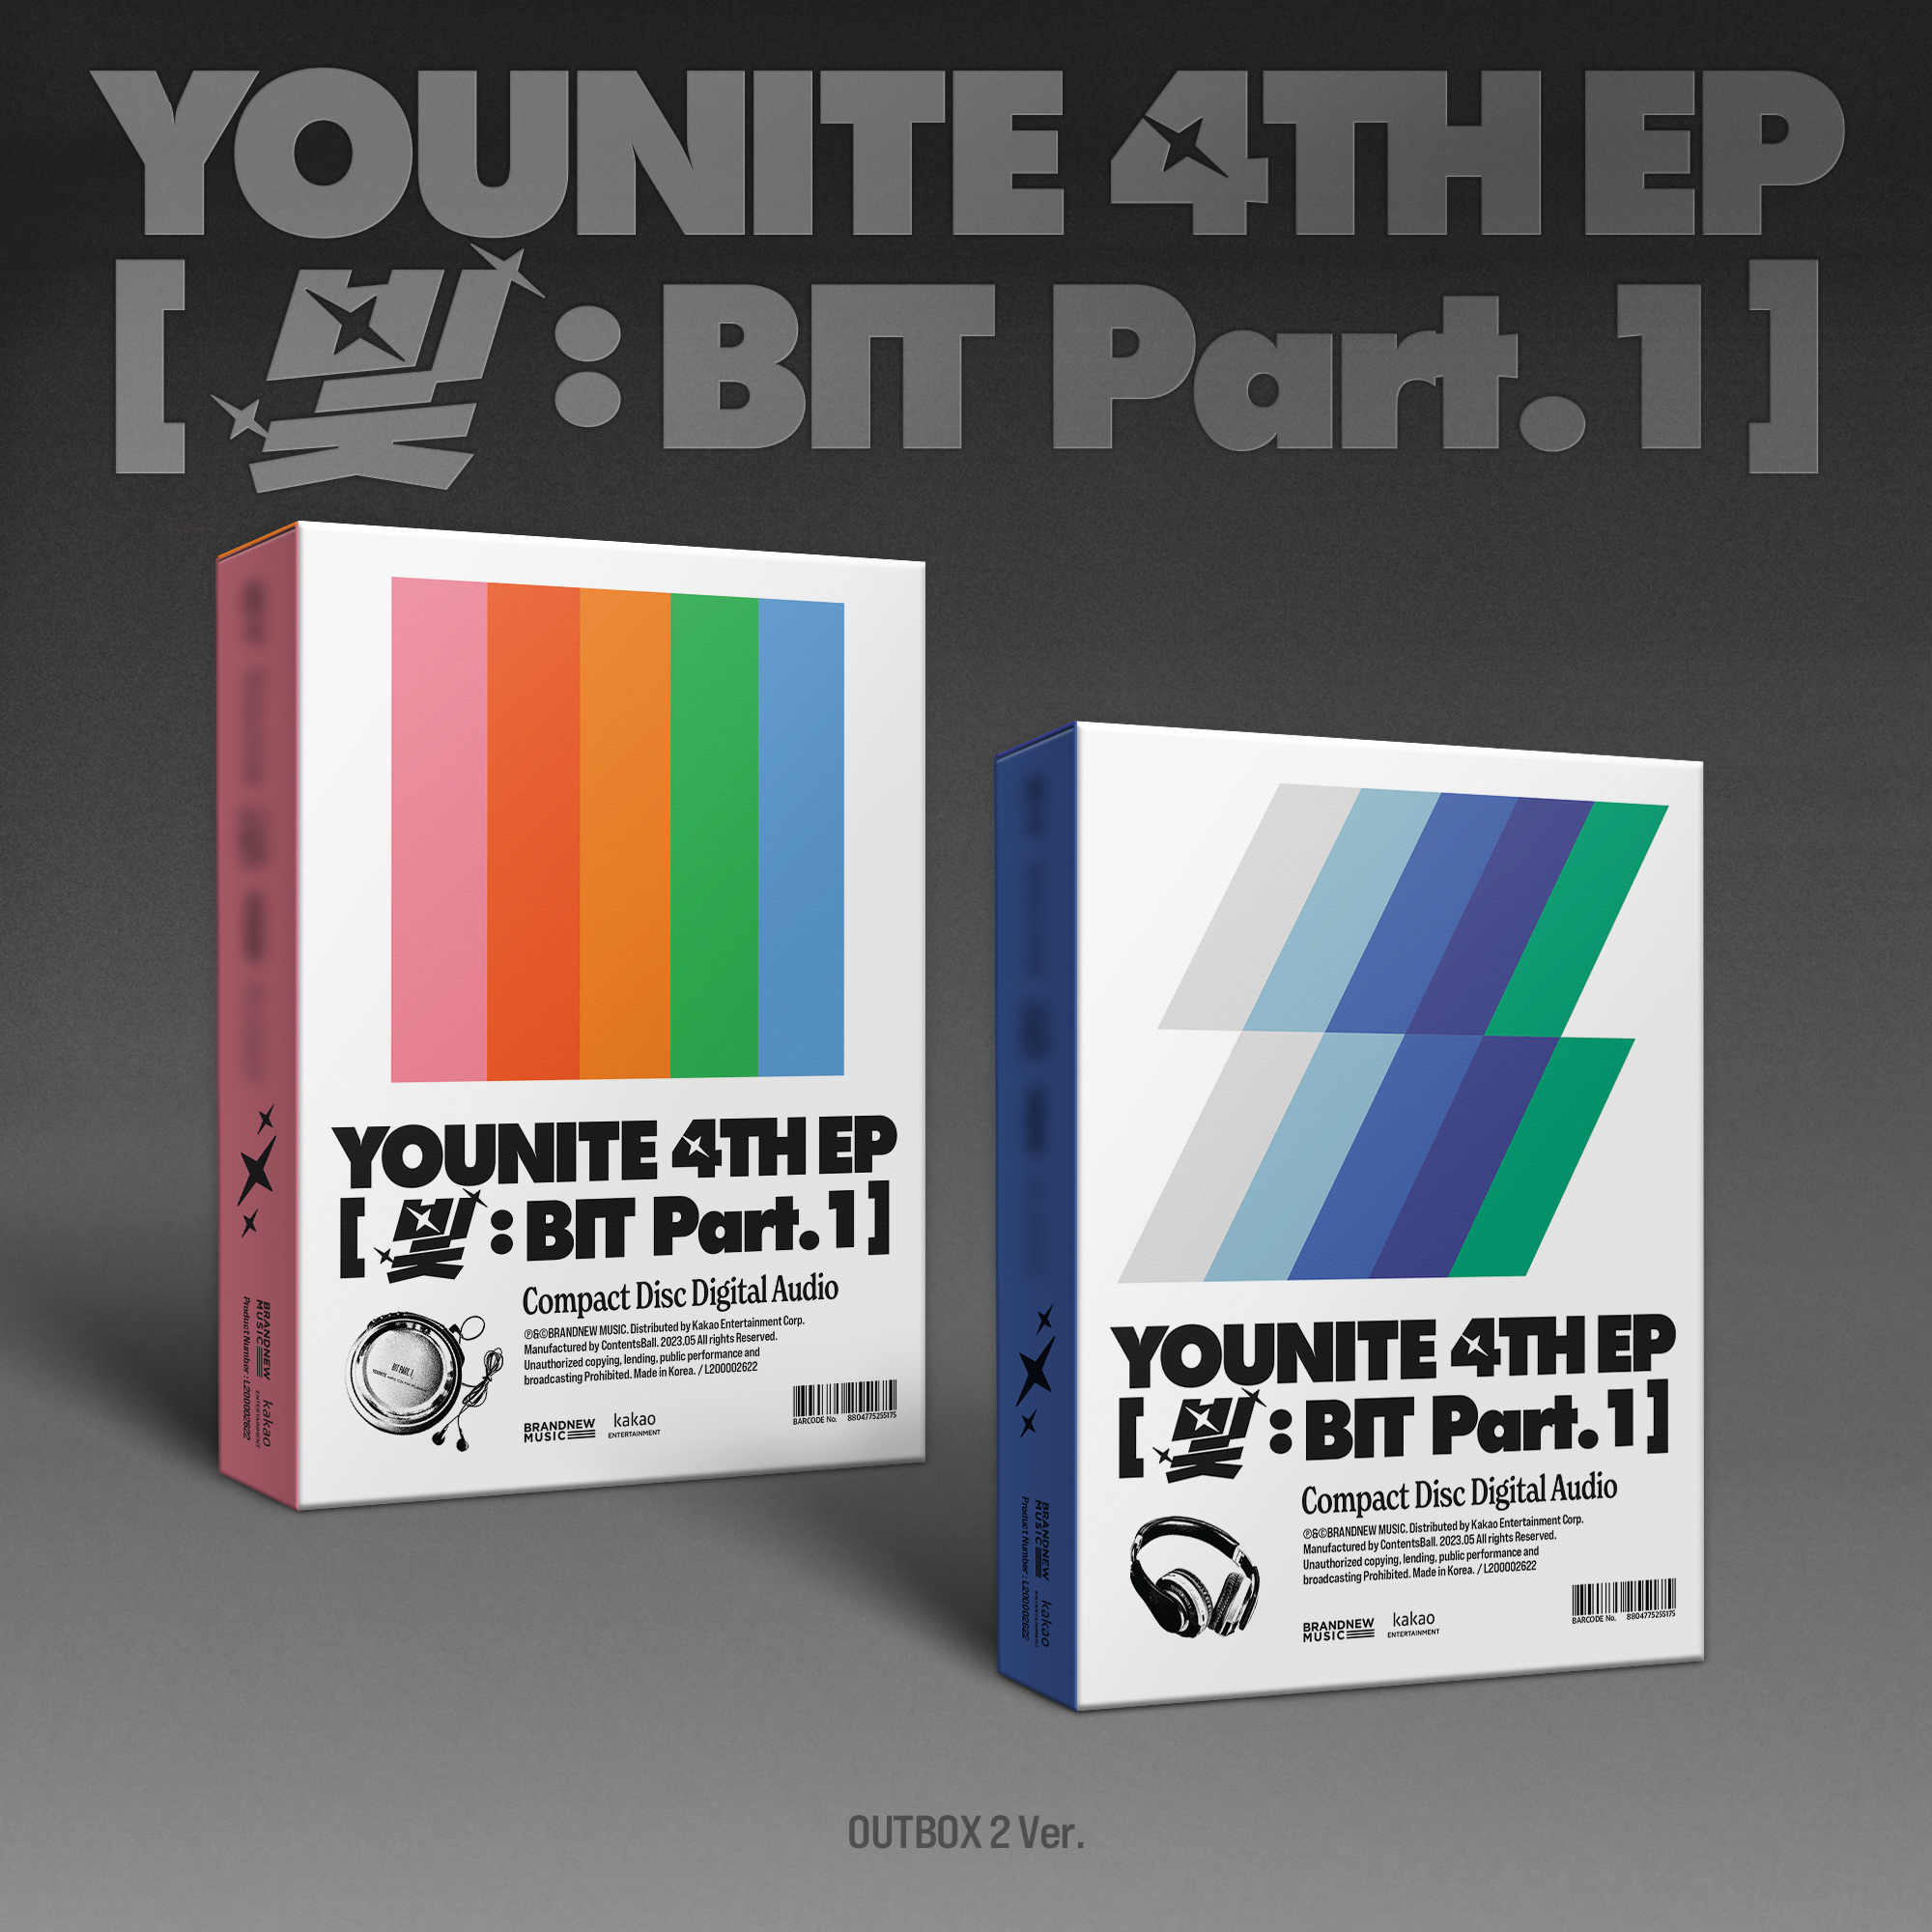 【特典会参加券付き】YOUNITE 4TH EP [光 : BIT Part.1]